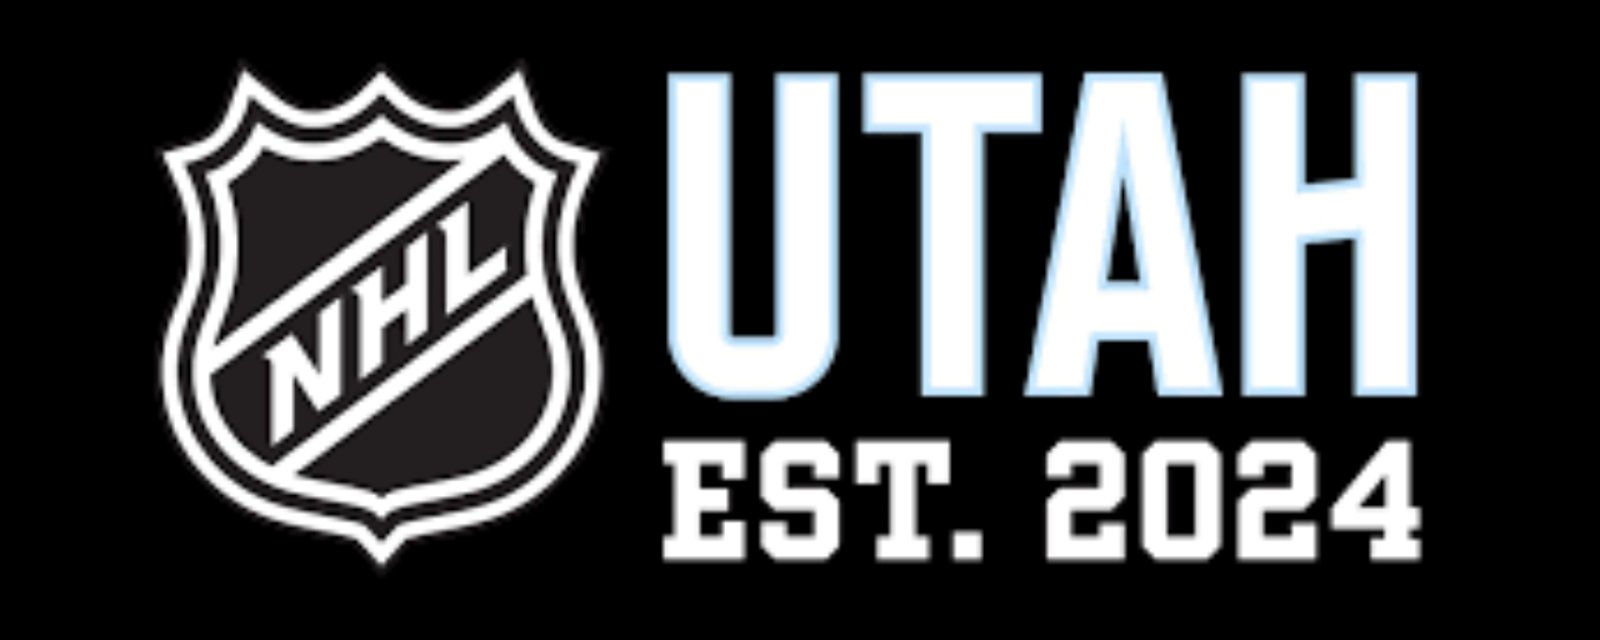 La nouvelle franchise de l'Utah dépose officiellement des demandes de marque pour son logo